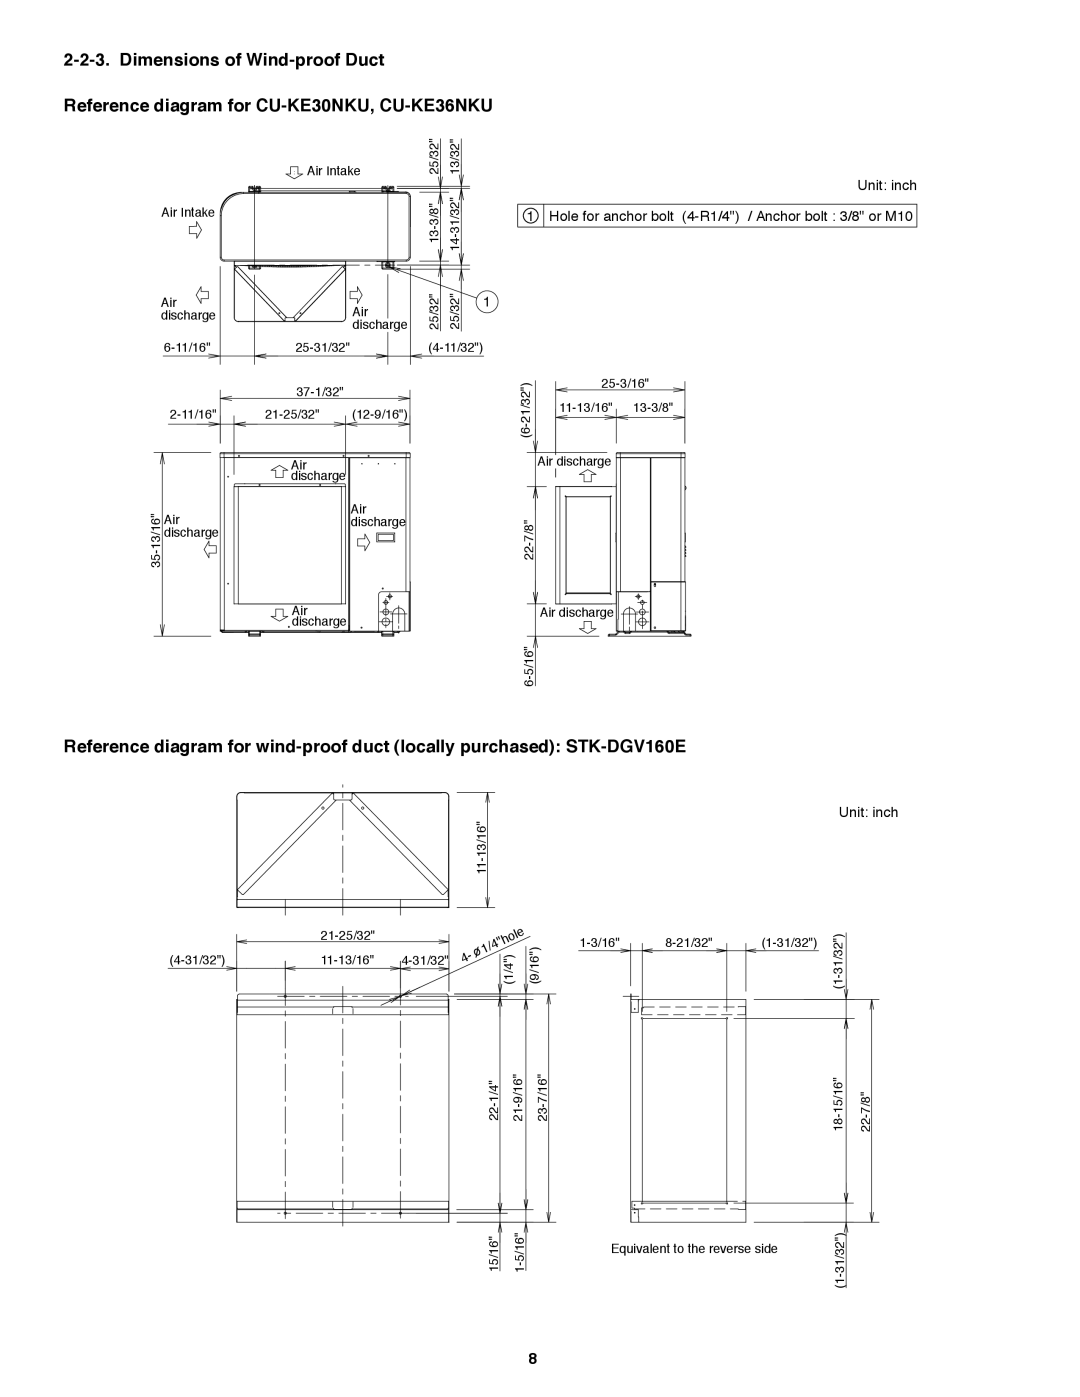 Panasonic CS-KE36NKU, CS-KE30NKU Dimensions of Wind-proofDuct, Reference diagram for CU-KE30NKU, CU-KE36NKU, Unit: inch 